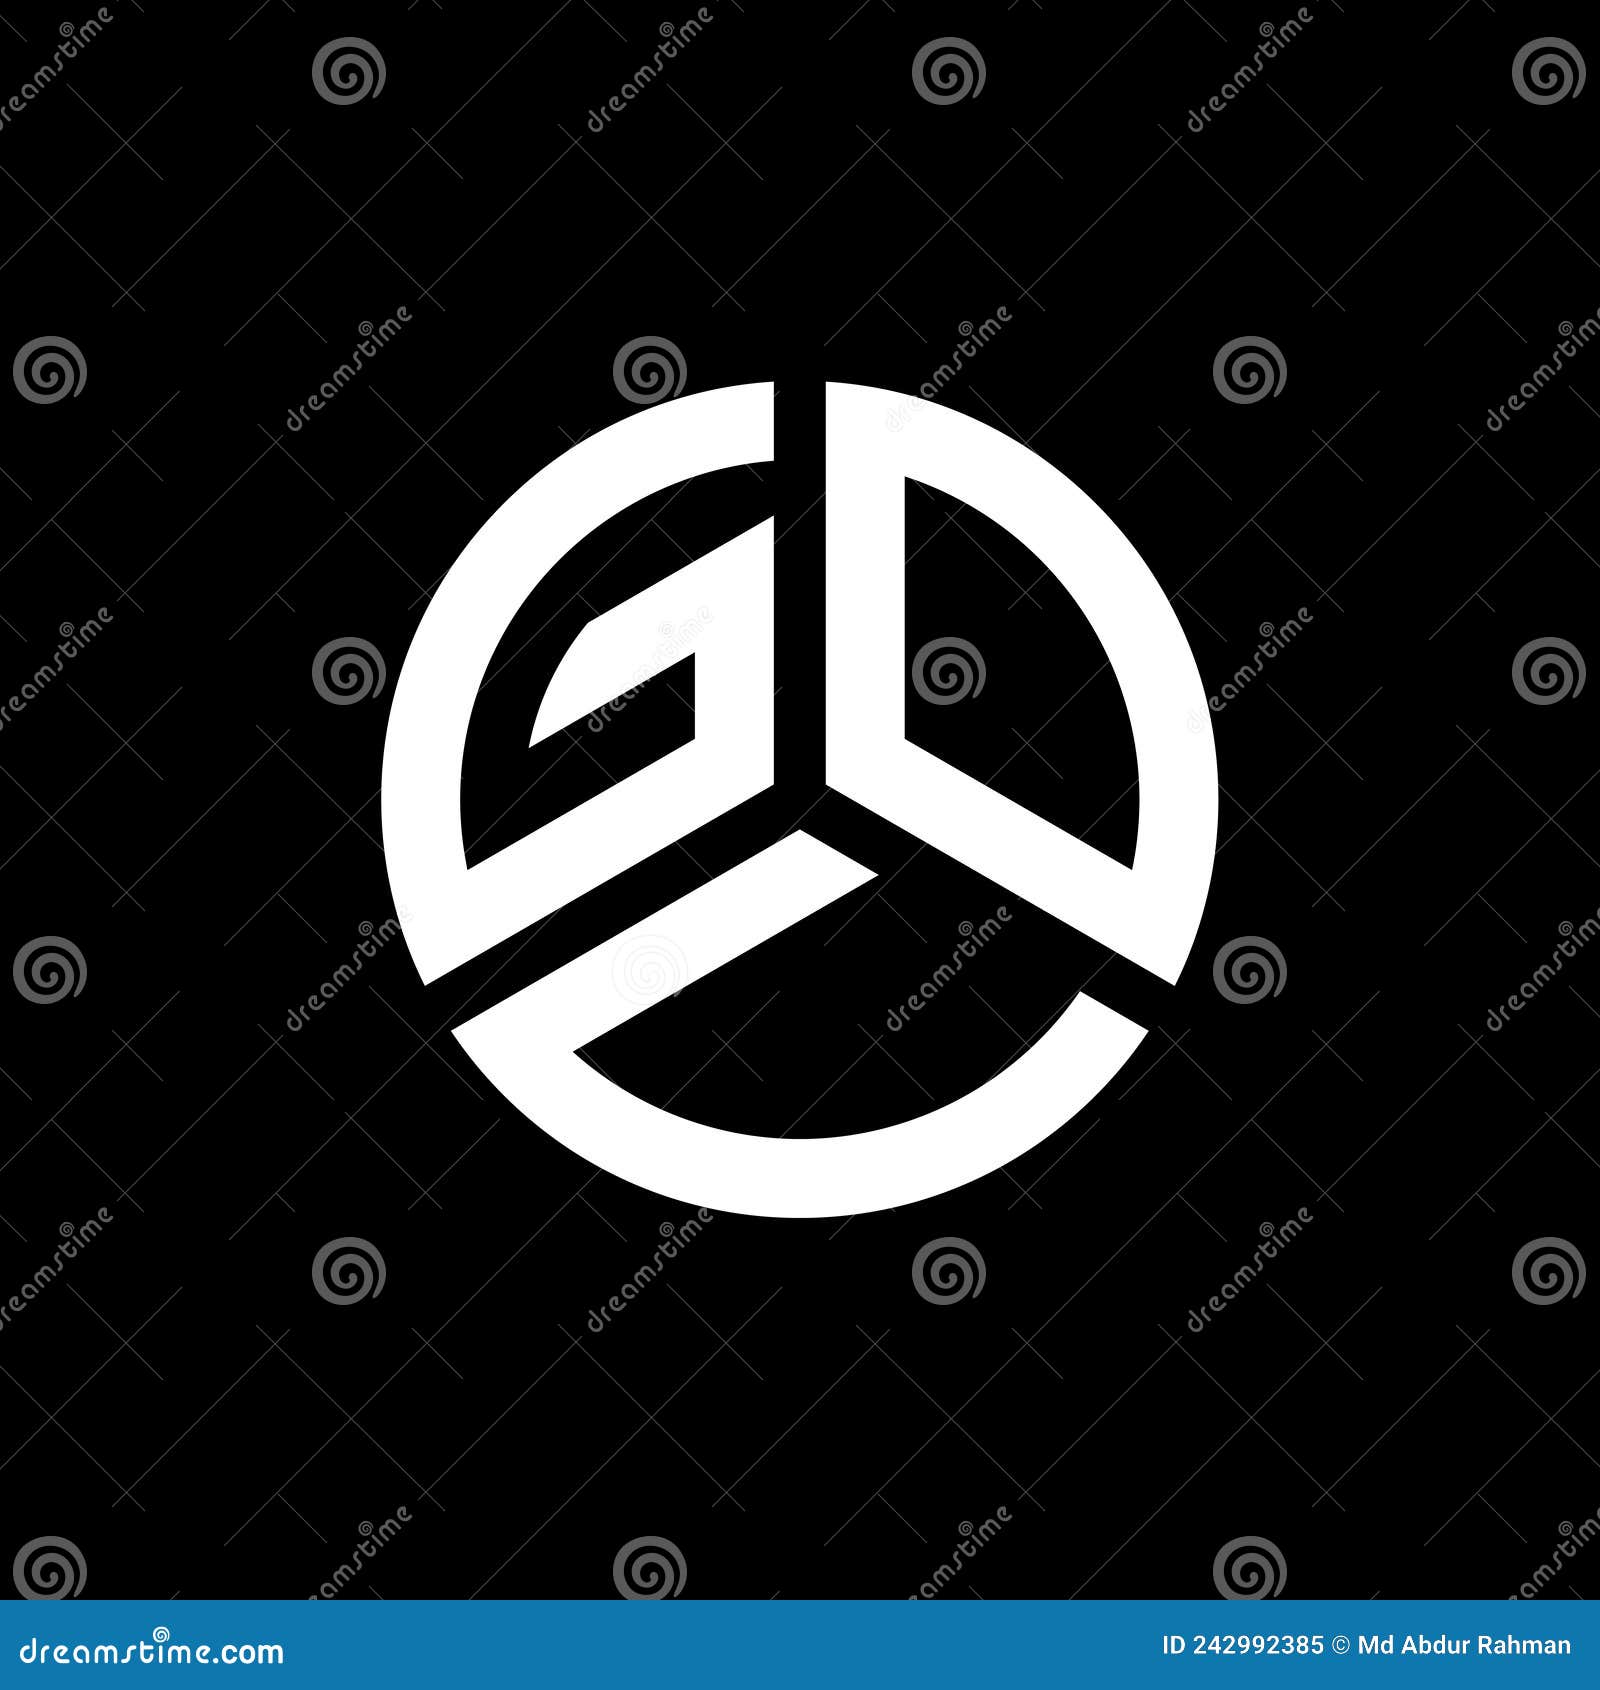 gov letter logo  on white background. gov creative initials letter logo concept. gov letter 